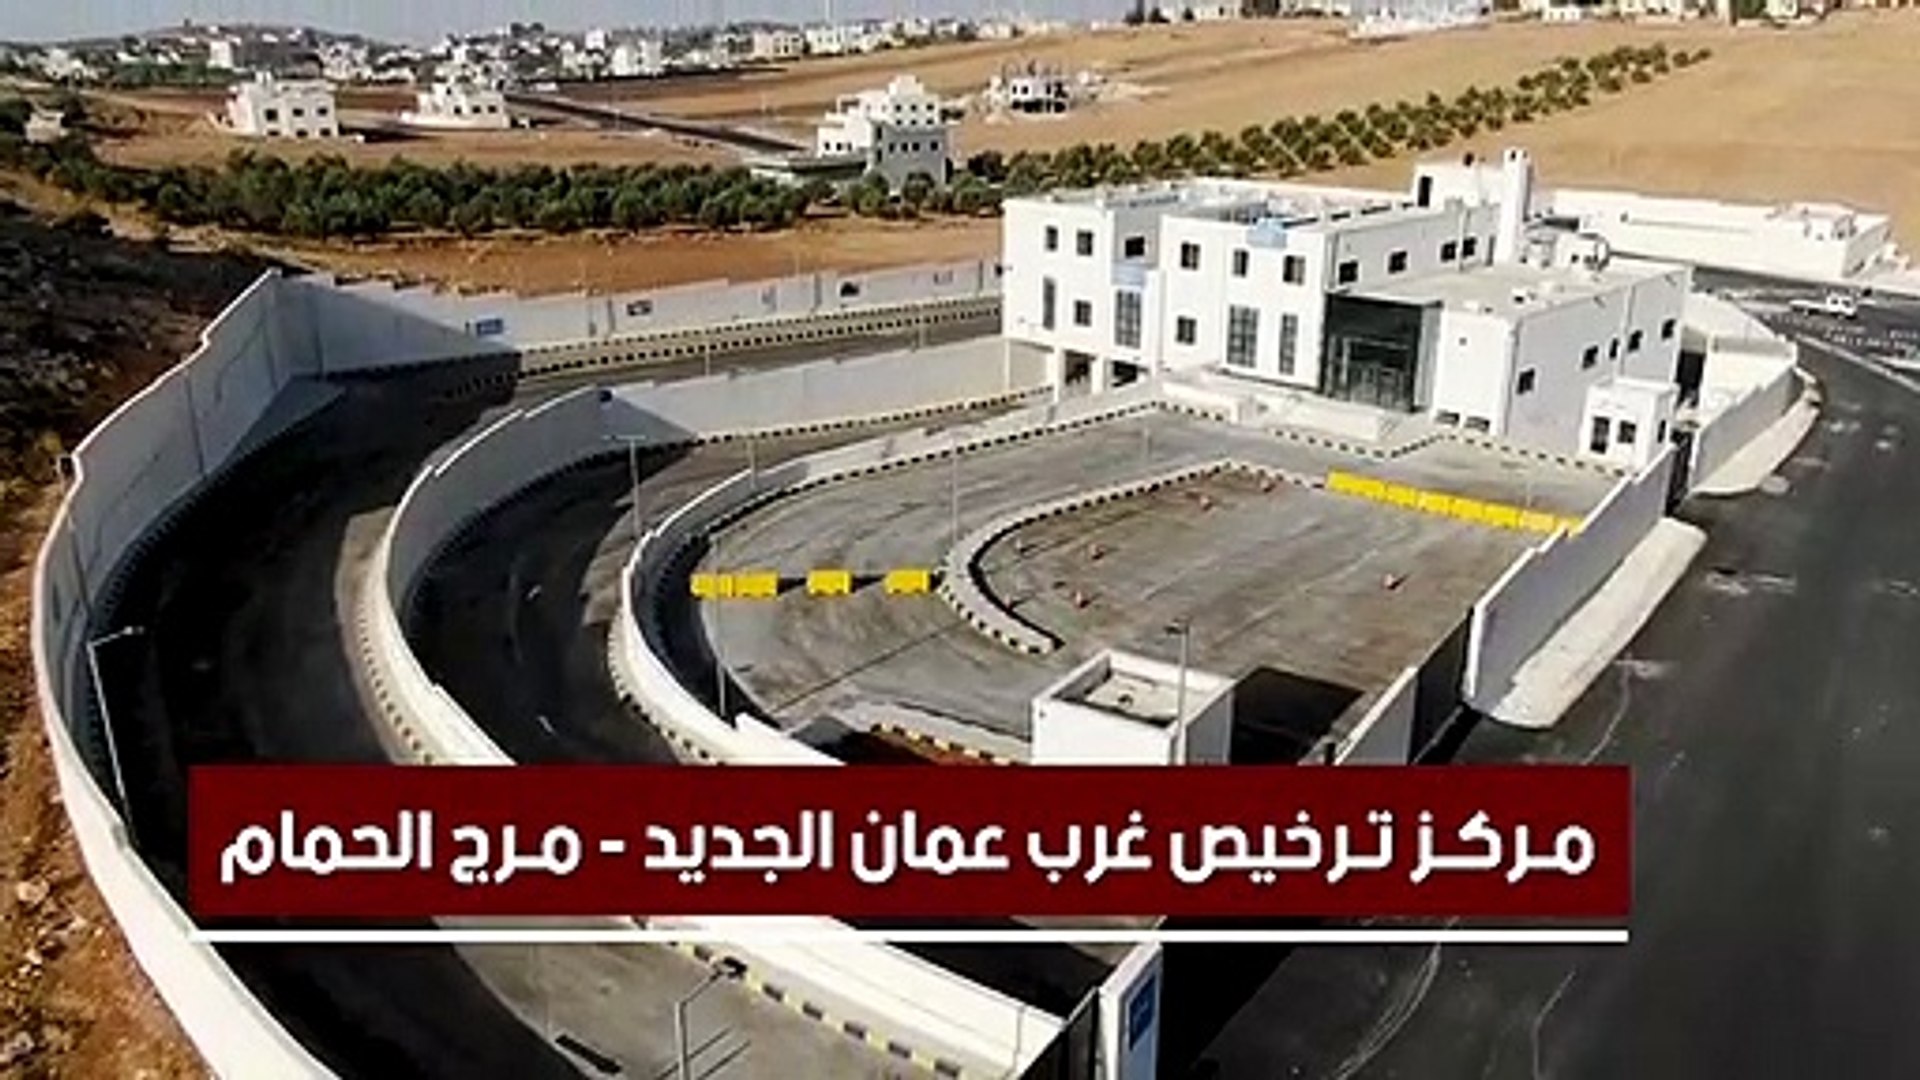 الأمن: بدء العمل بترخيص غرب عمان في منطقة مرج الحمام الأسبوع القادم - فيديو  Dailymotion